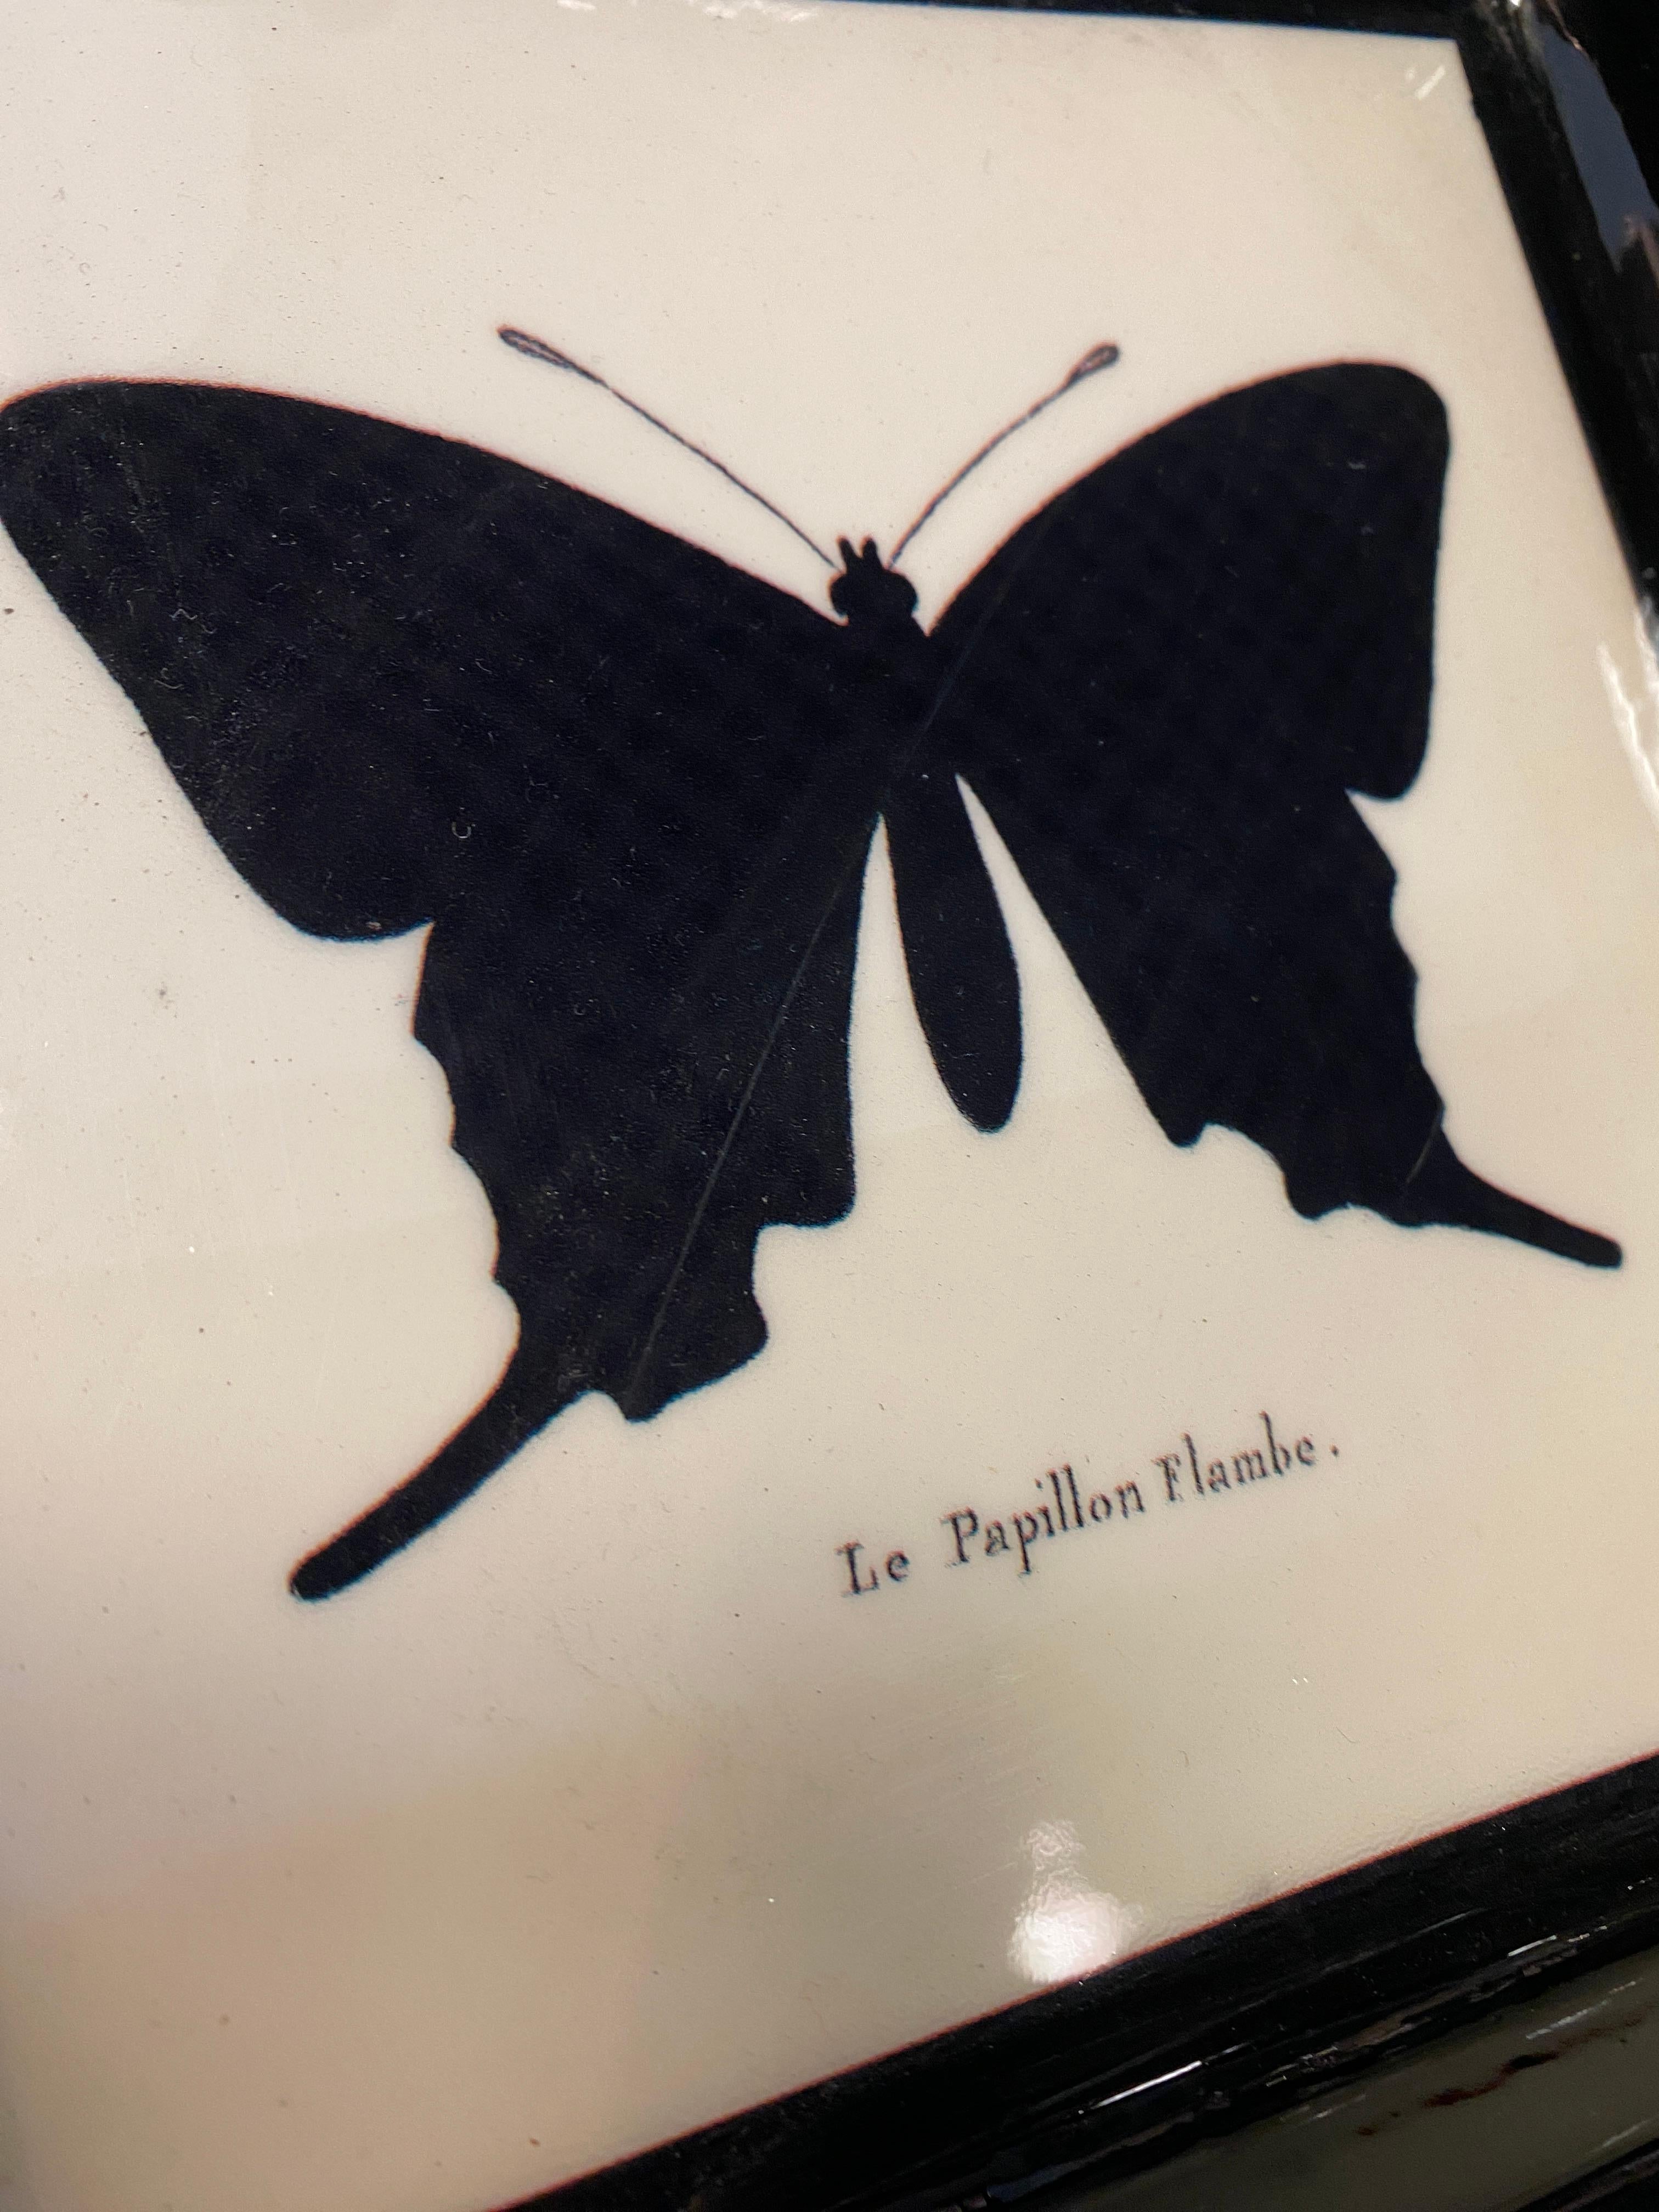 Elegantes bedrucktes Taschentablett, das eine exotische Naturlandschaft mit einem Schmetterling zeigt. 

Dieses Objekt ist Teil einer großen Kollektion mit dem Namen 